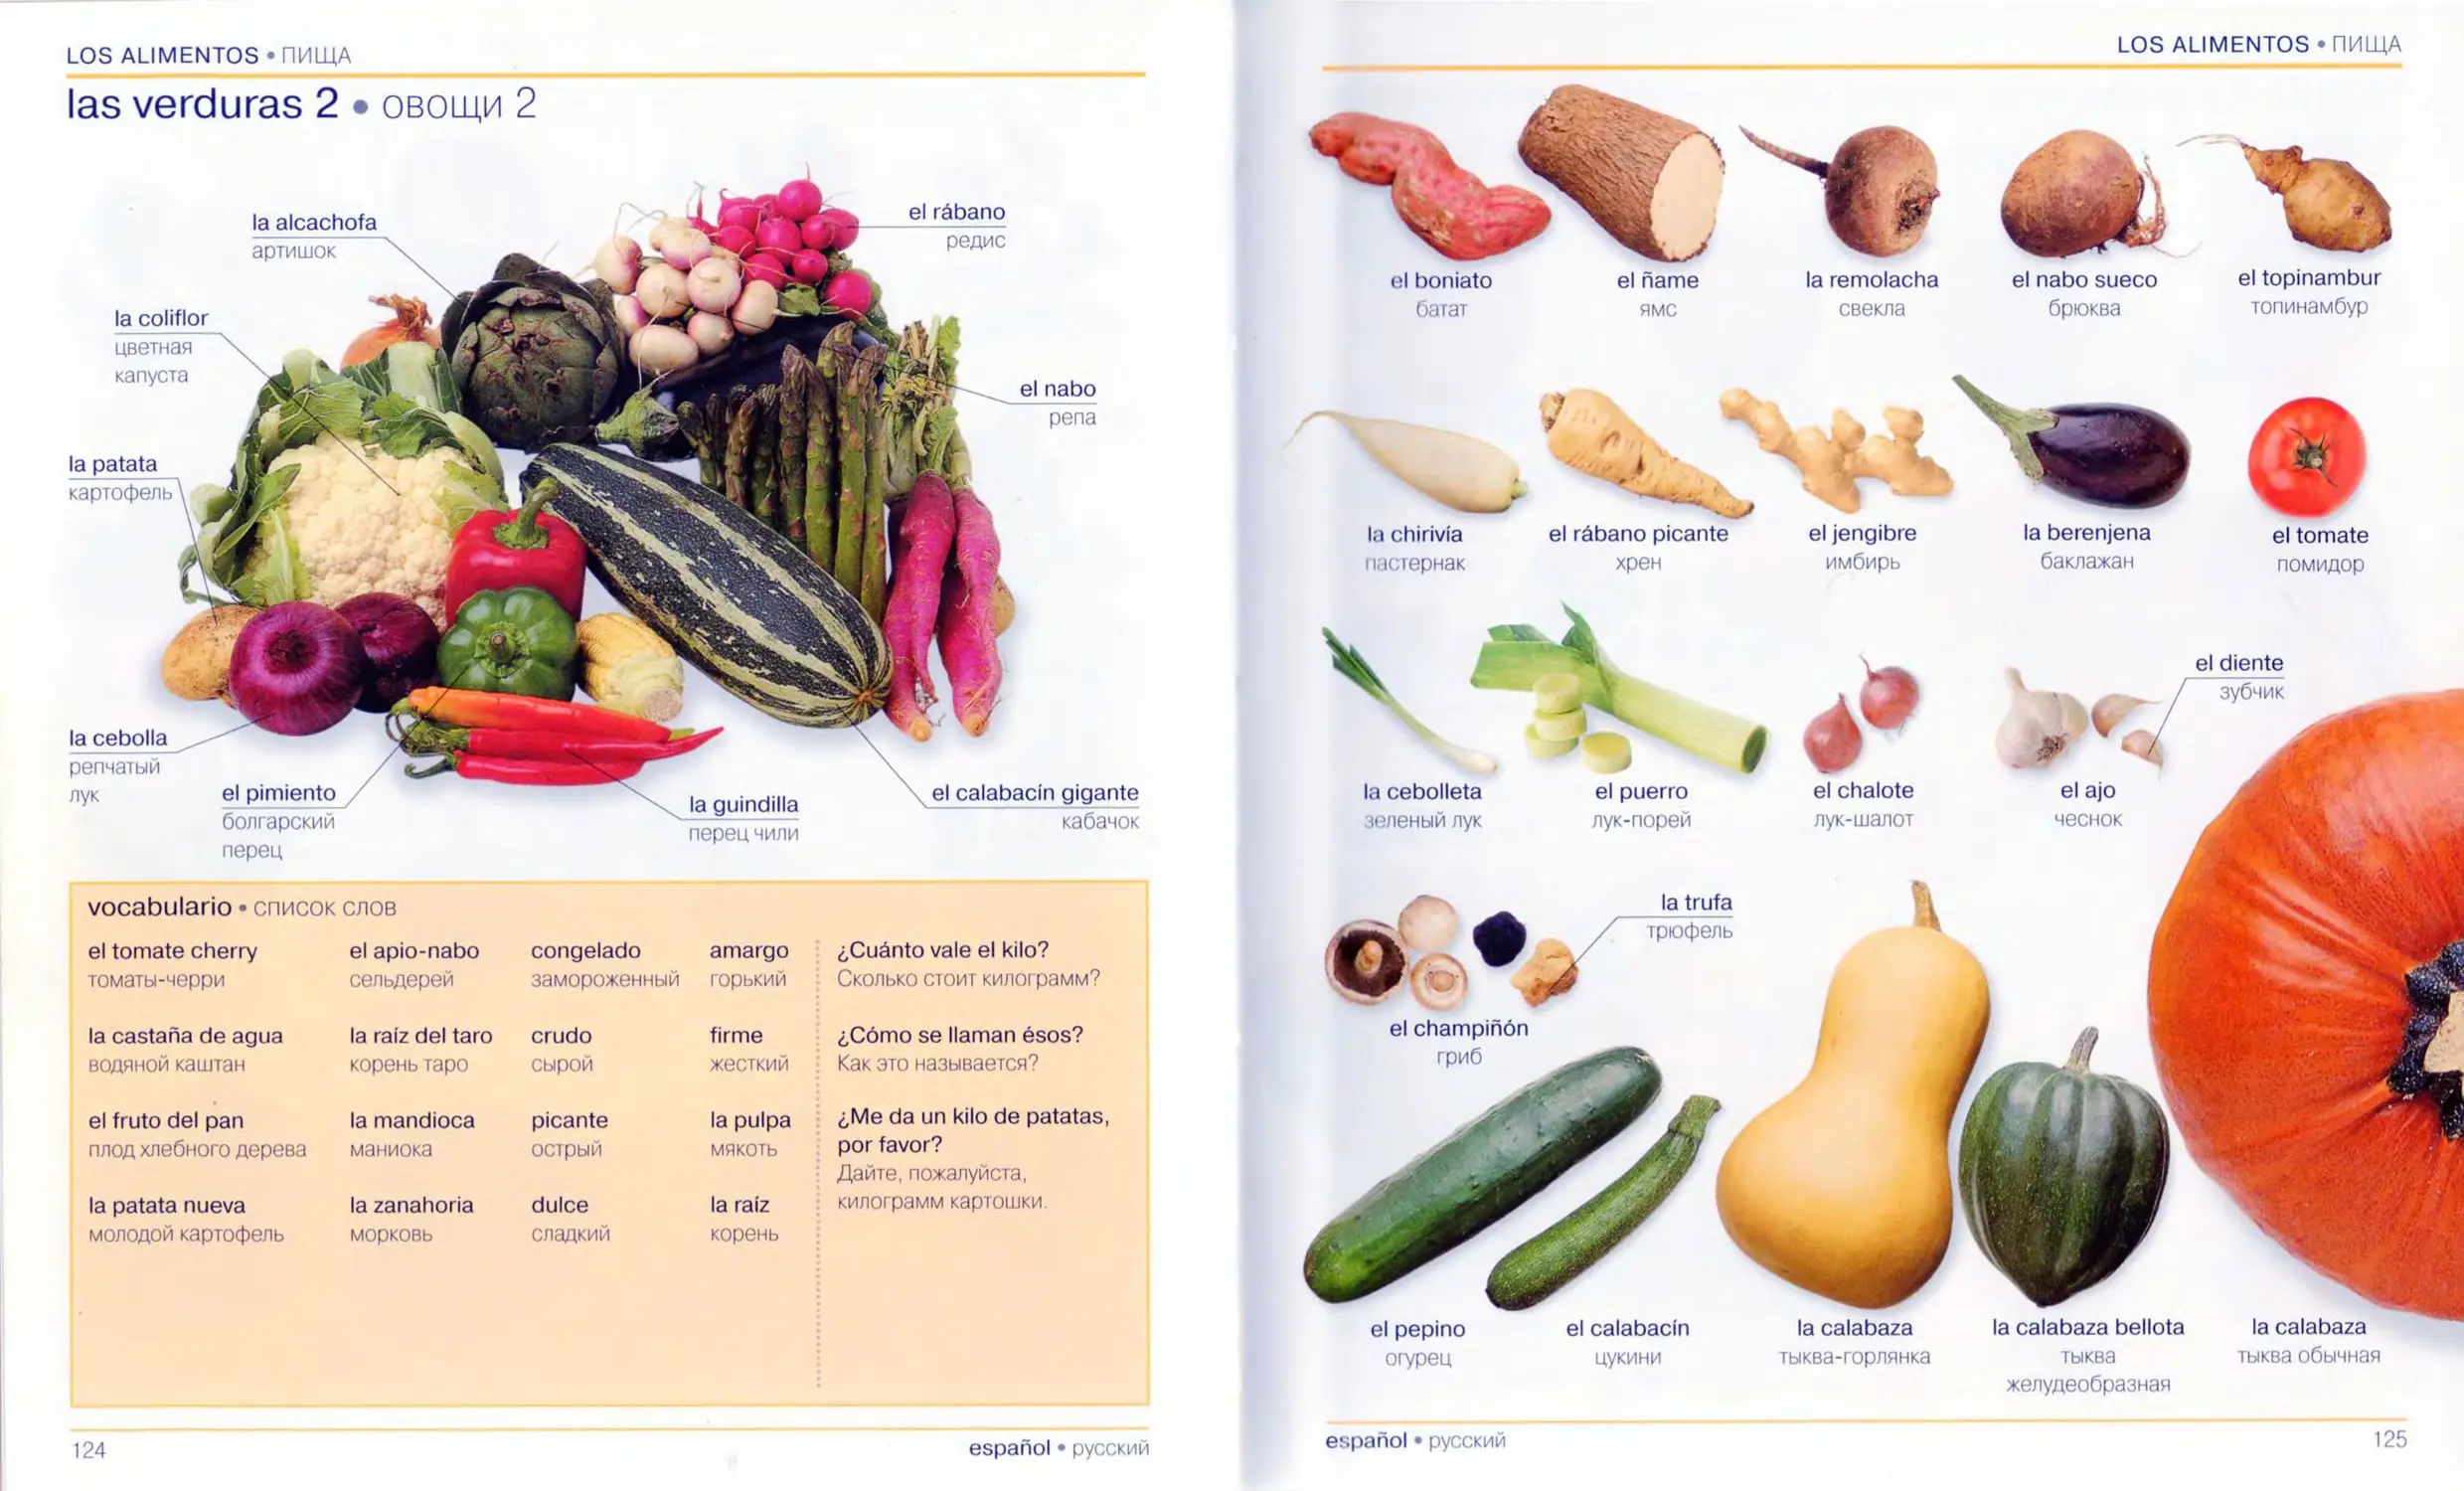 Овощи по испанскому языку